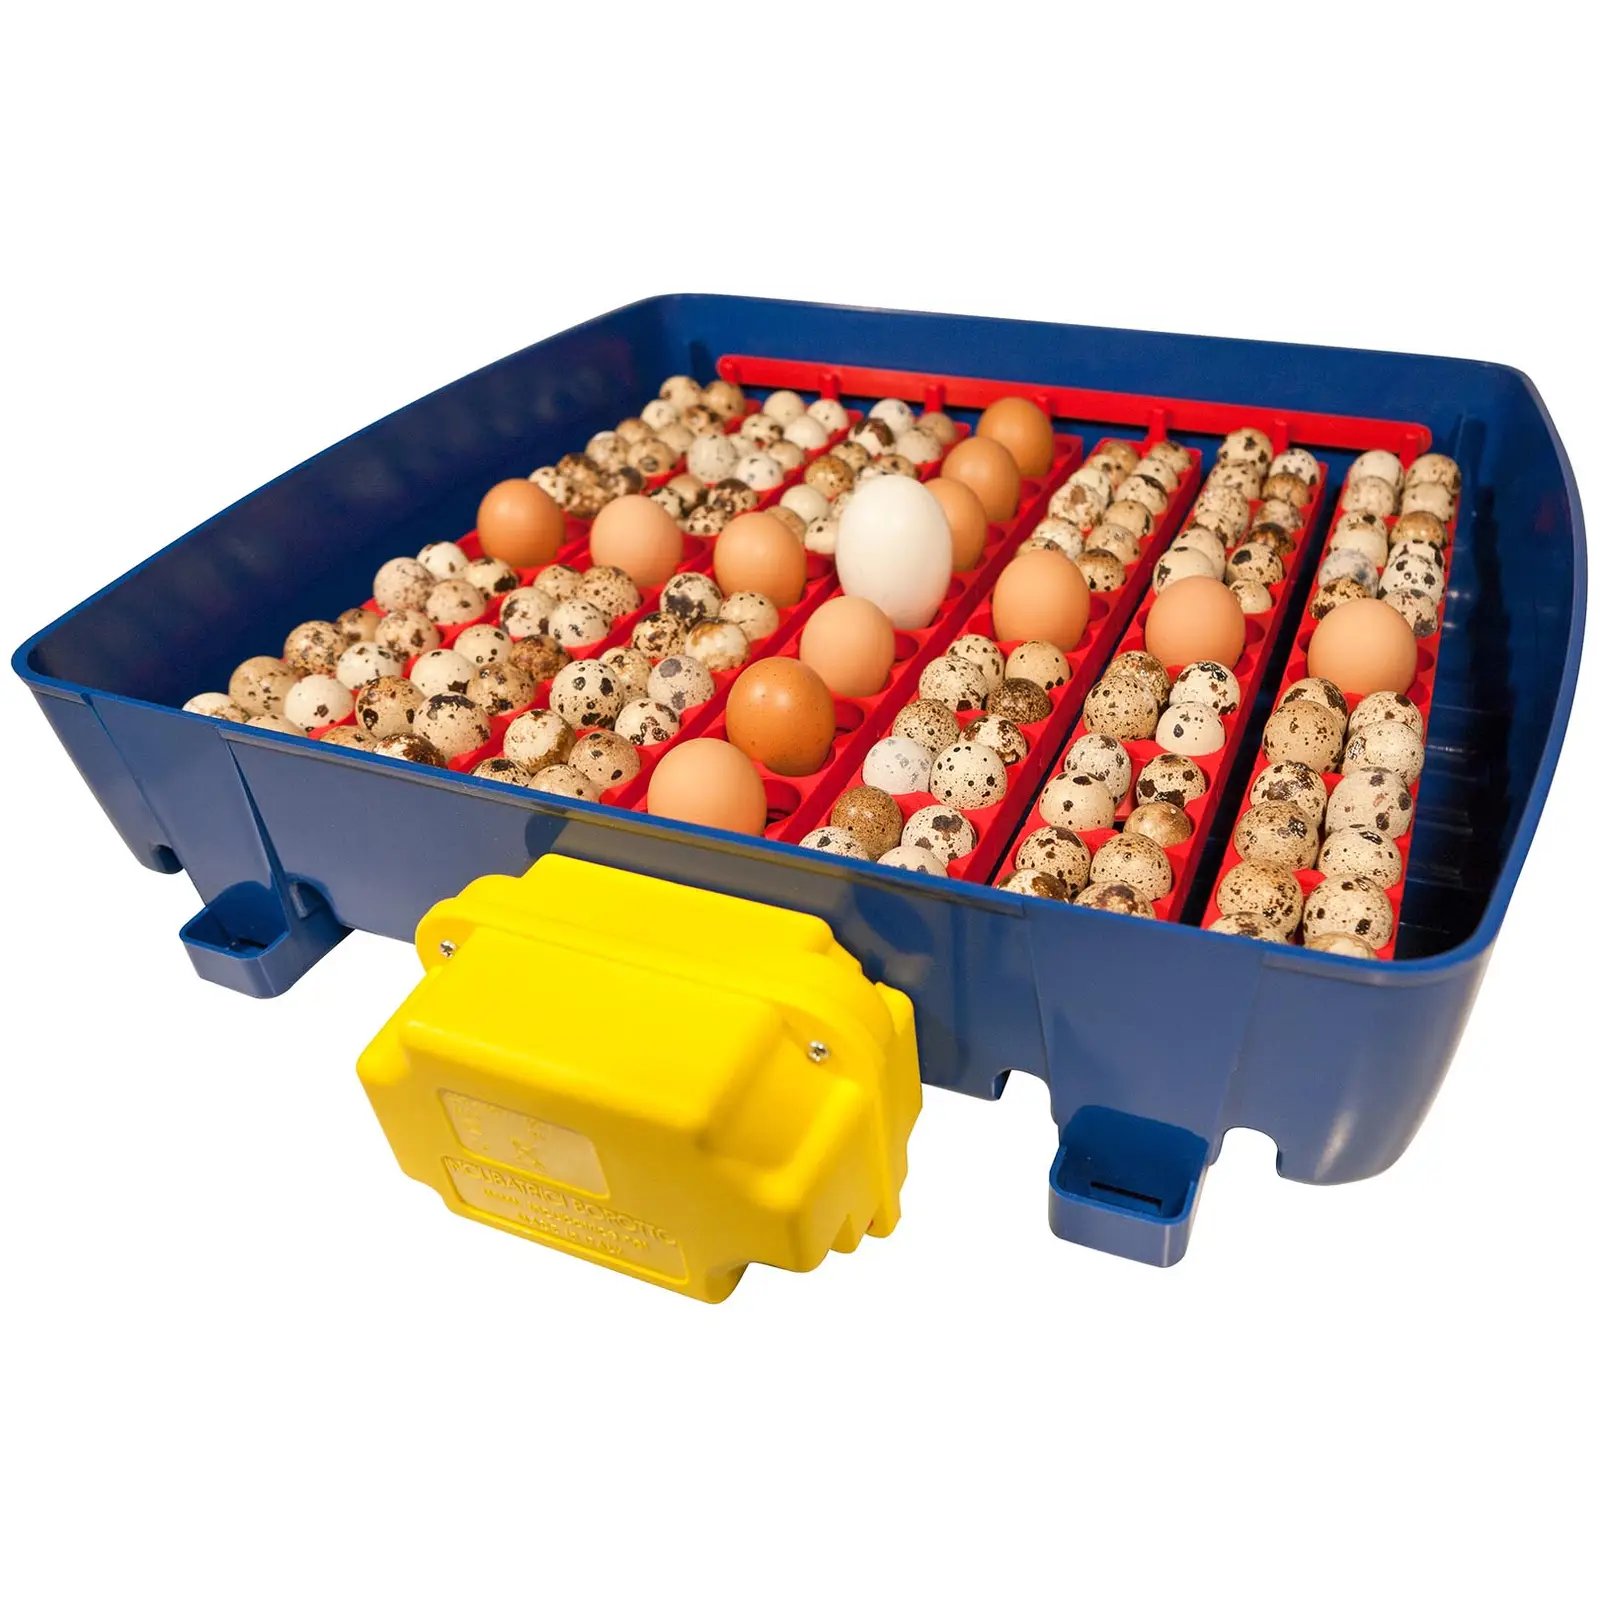 Incubator - 49 eggs - fully automatic